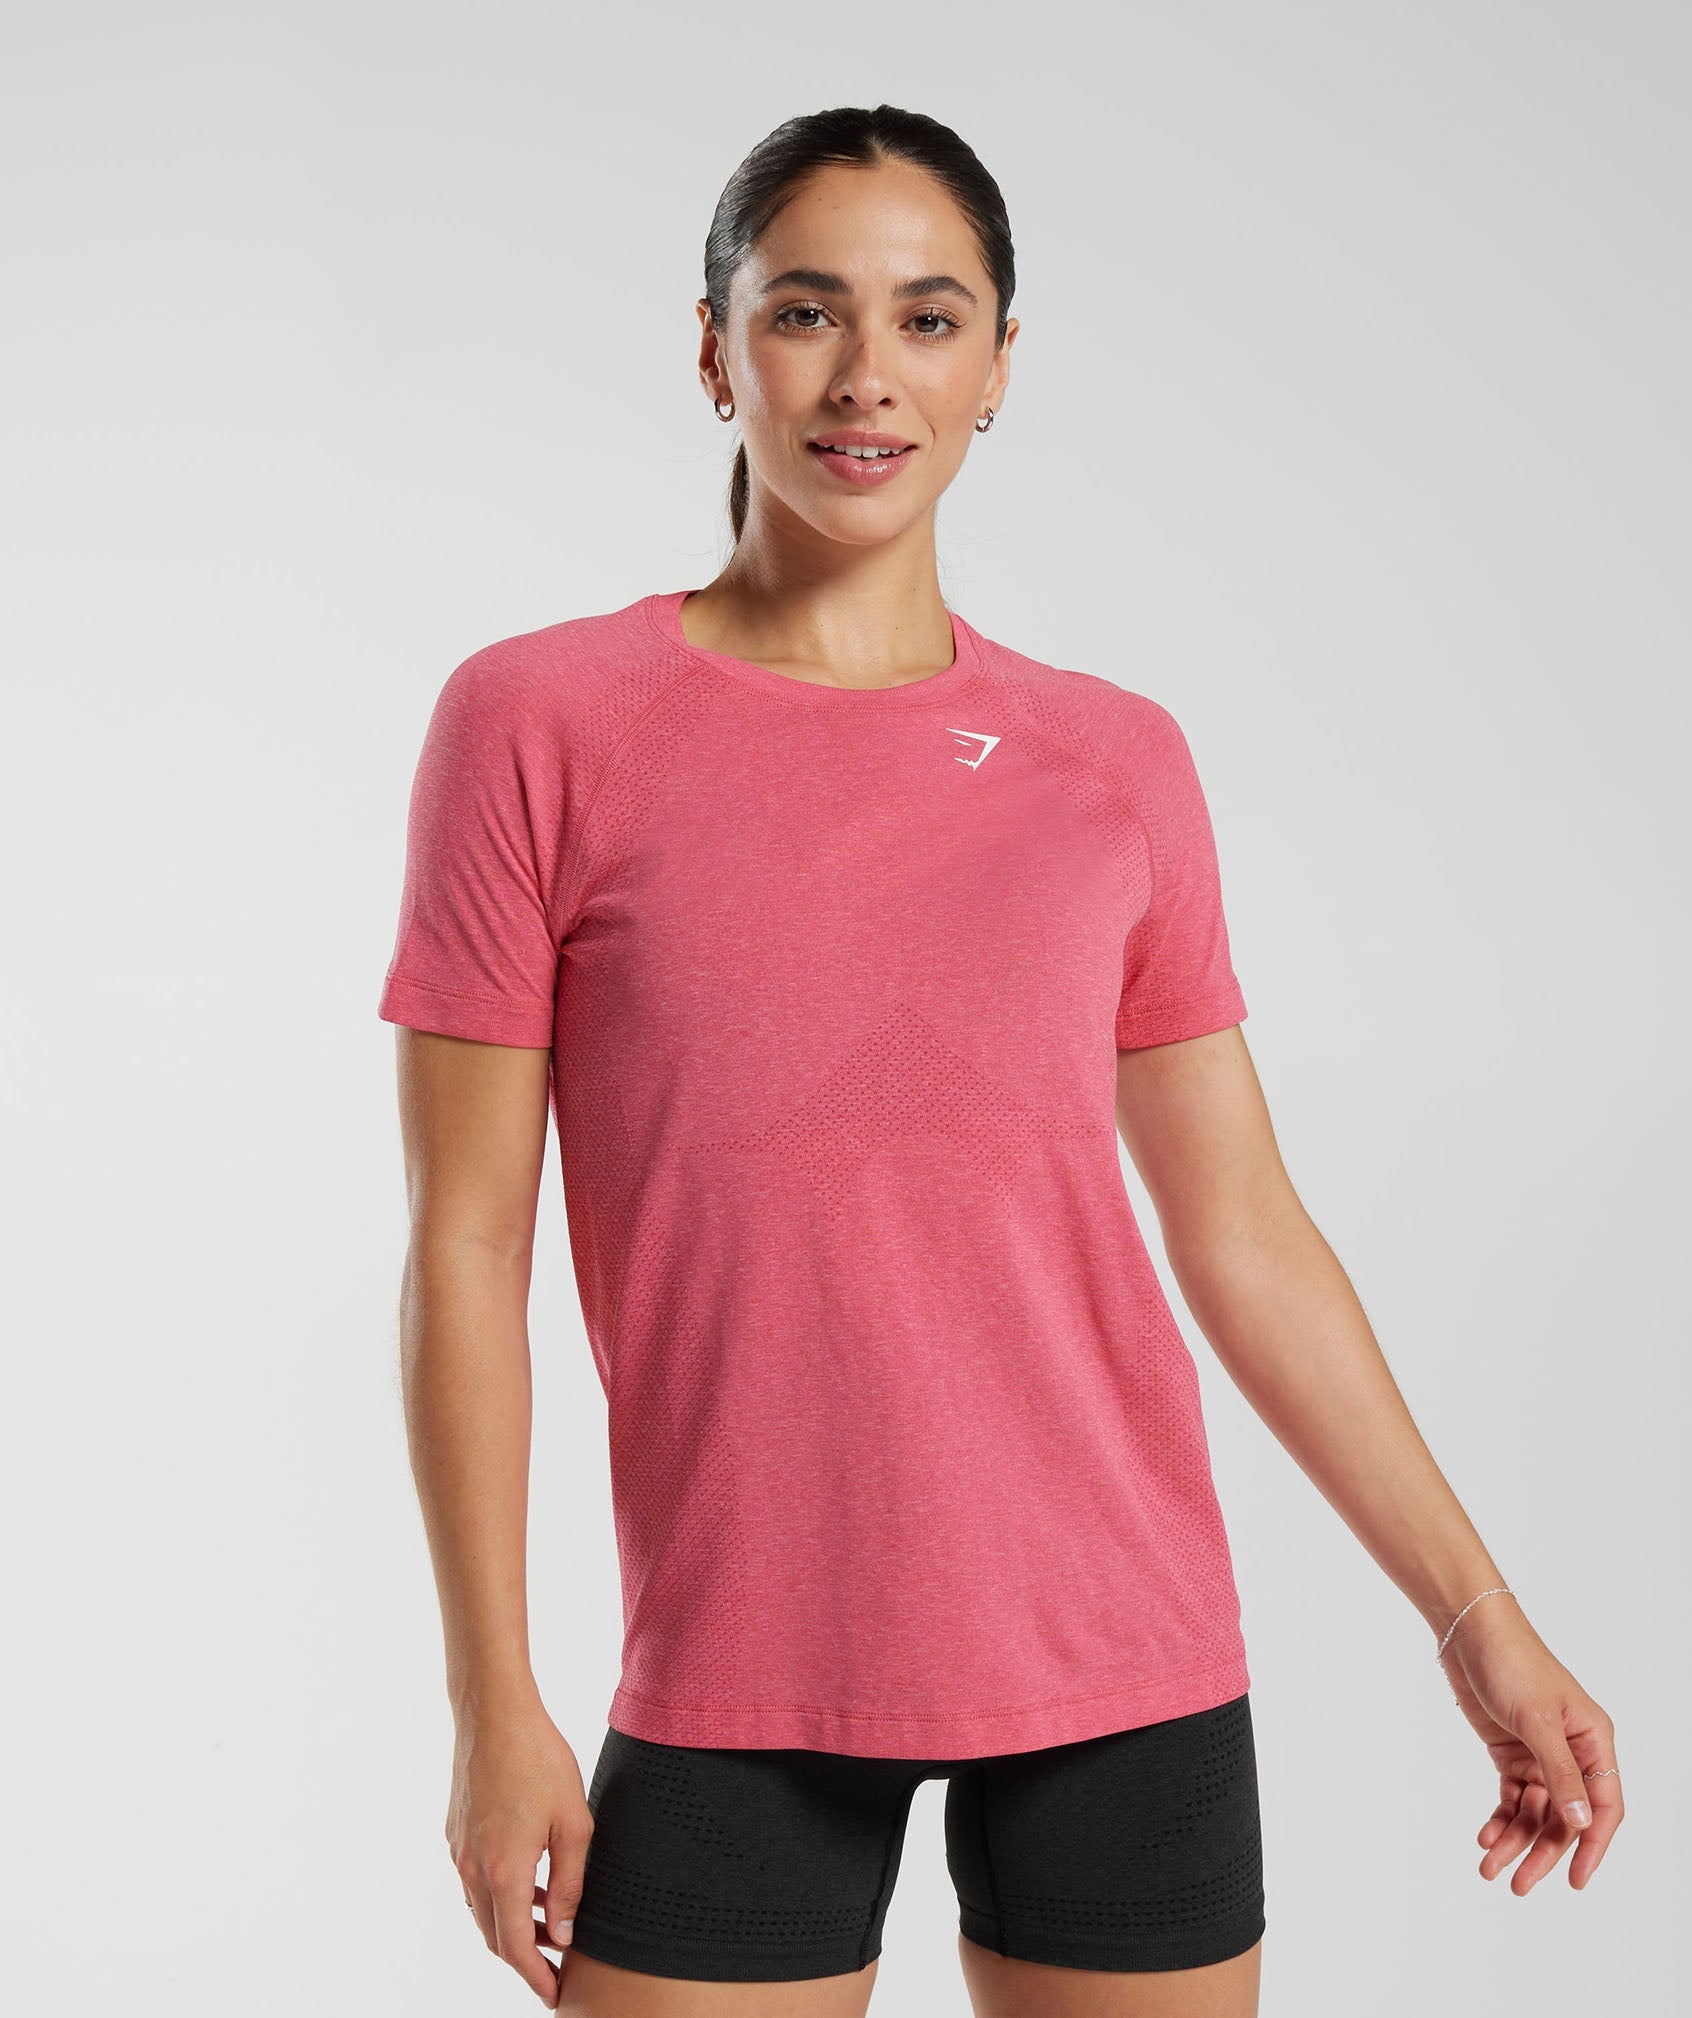 Gymshark Vital Seamless 2.0 Light T Shirt - Plum Pink Marl